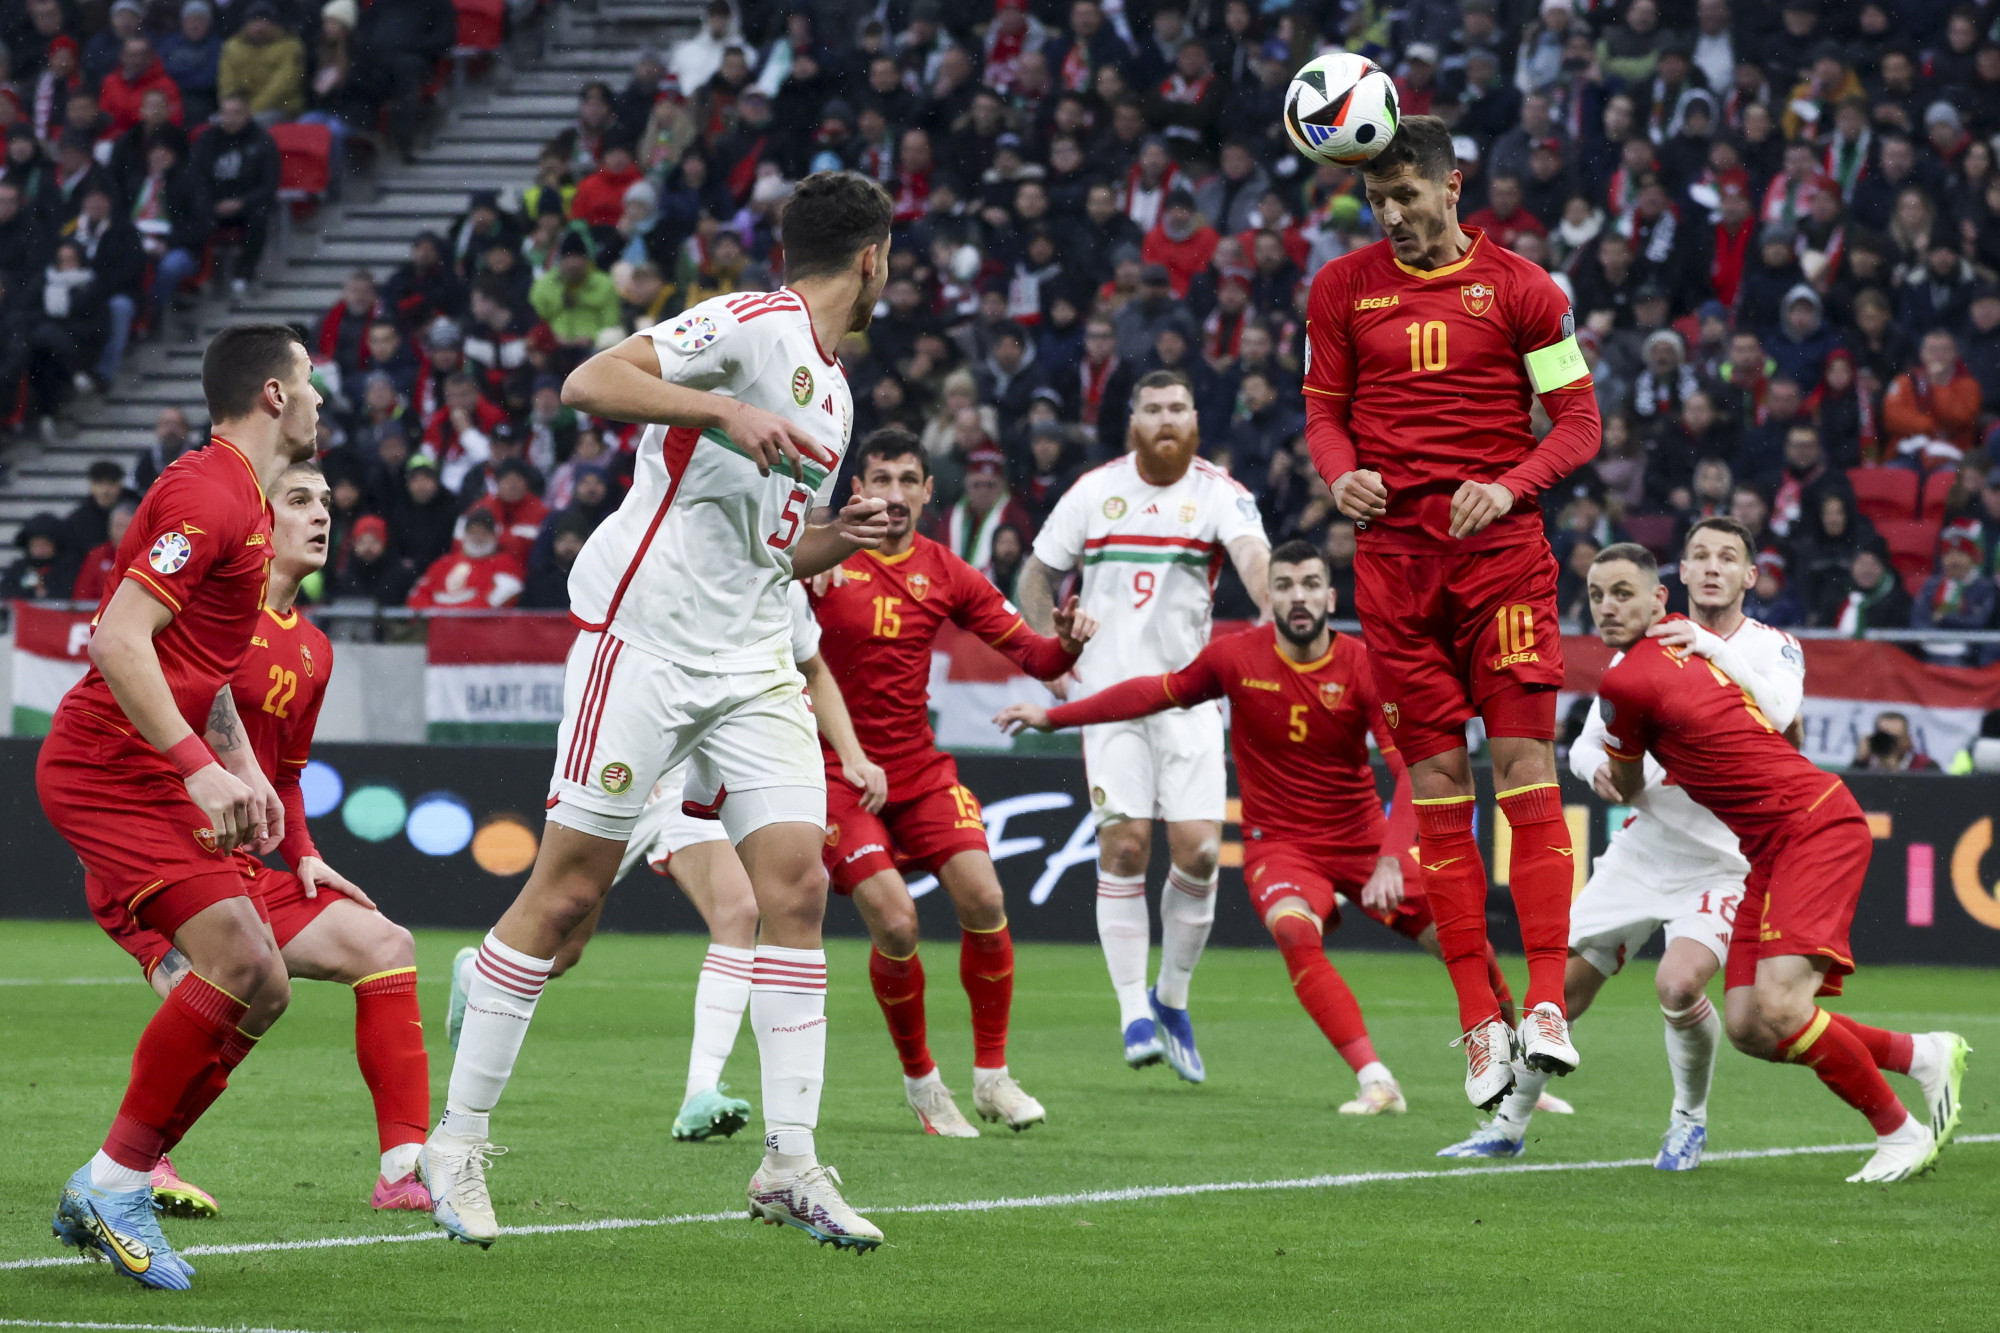 A 36. percben vezet Montenegró a magyar válogatott ellen